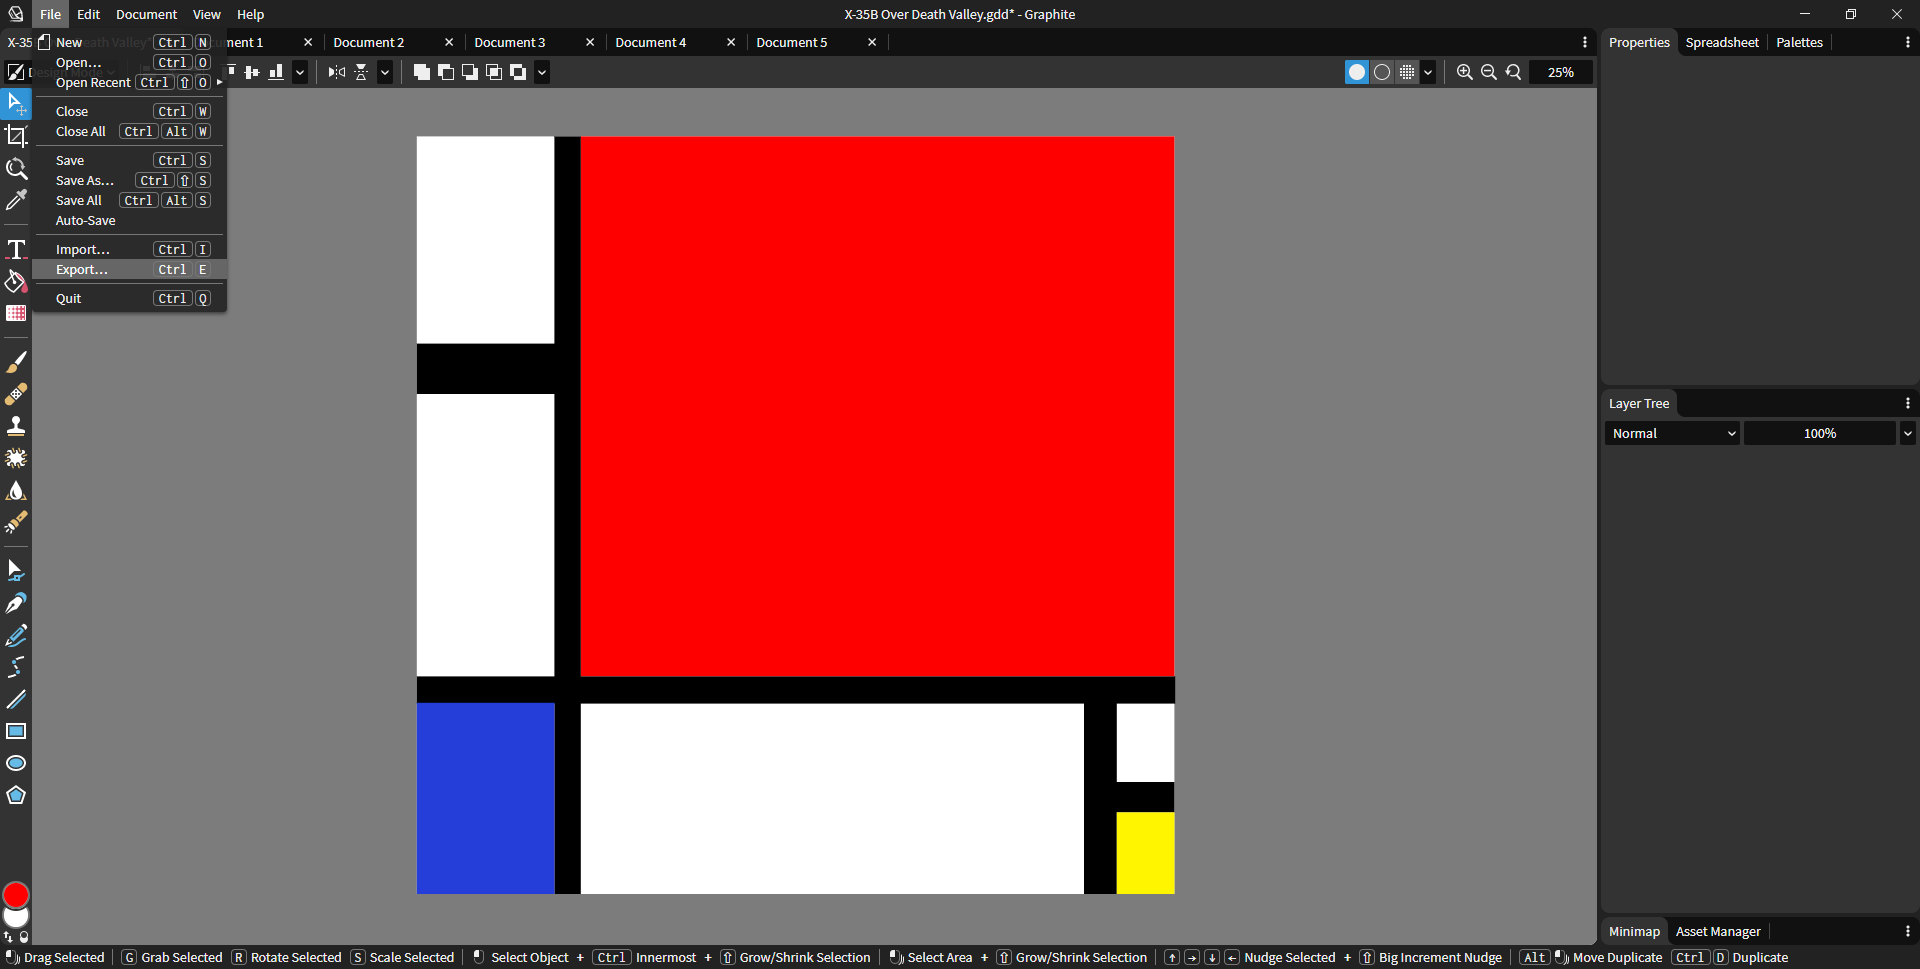 Piet Mondrian's artwork replicated in Graphite using the new color picker